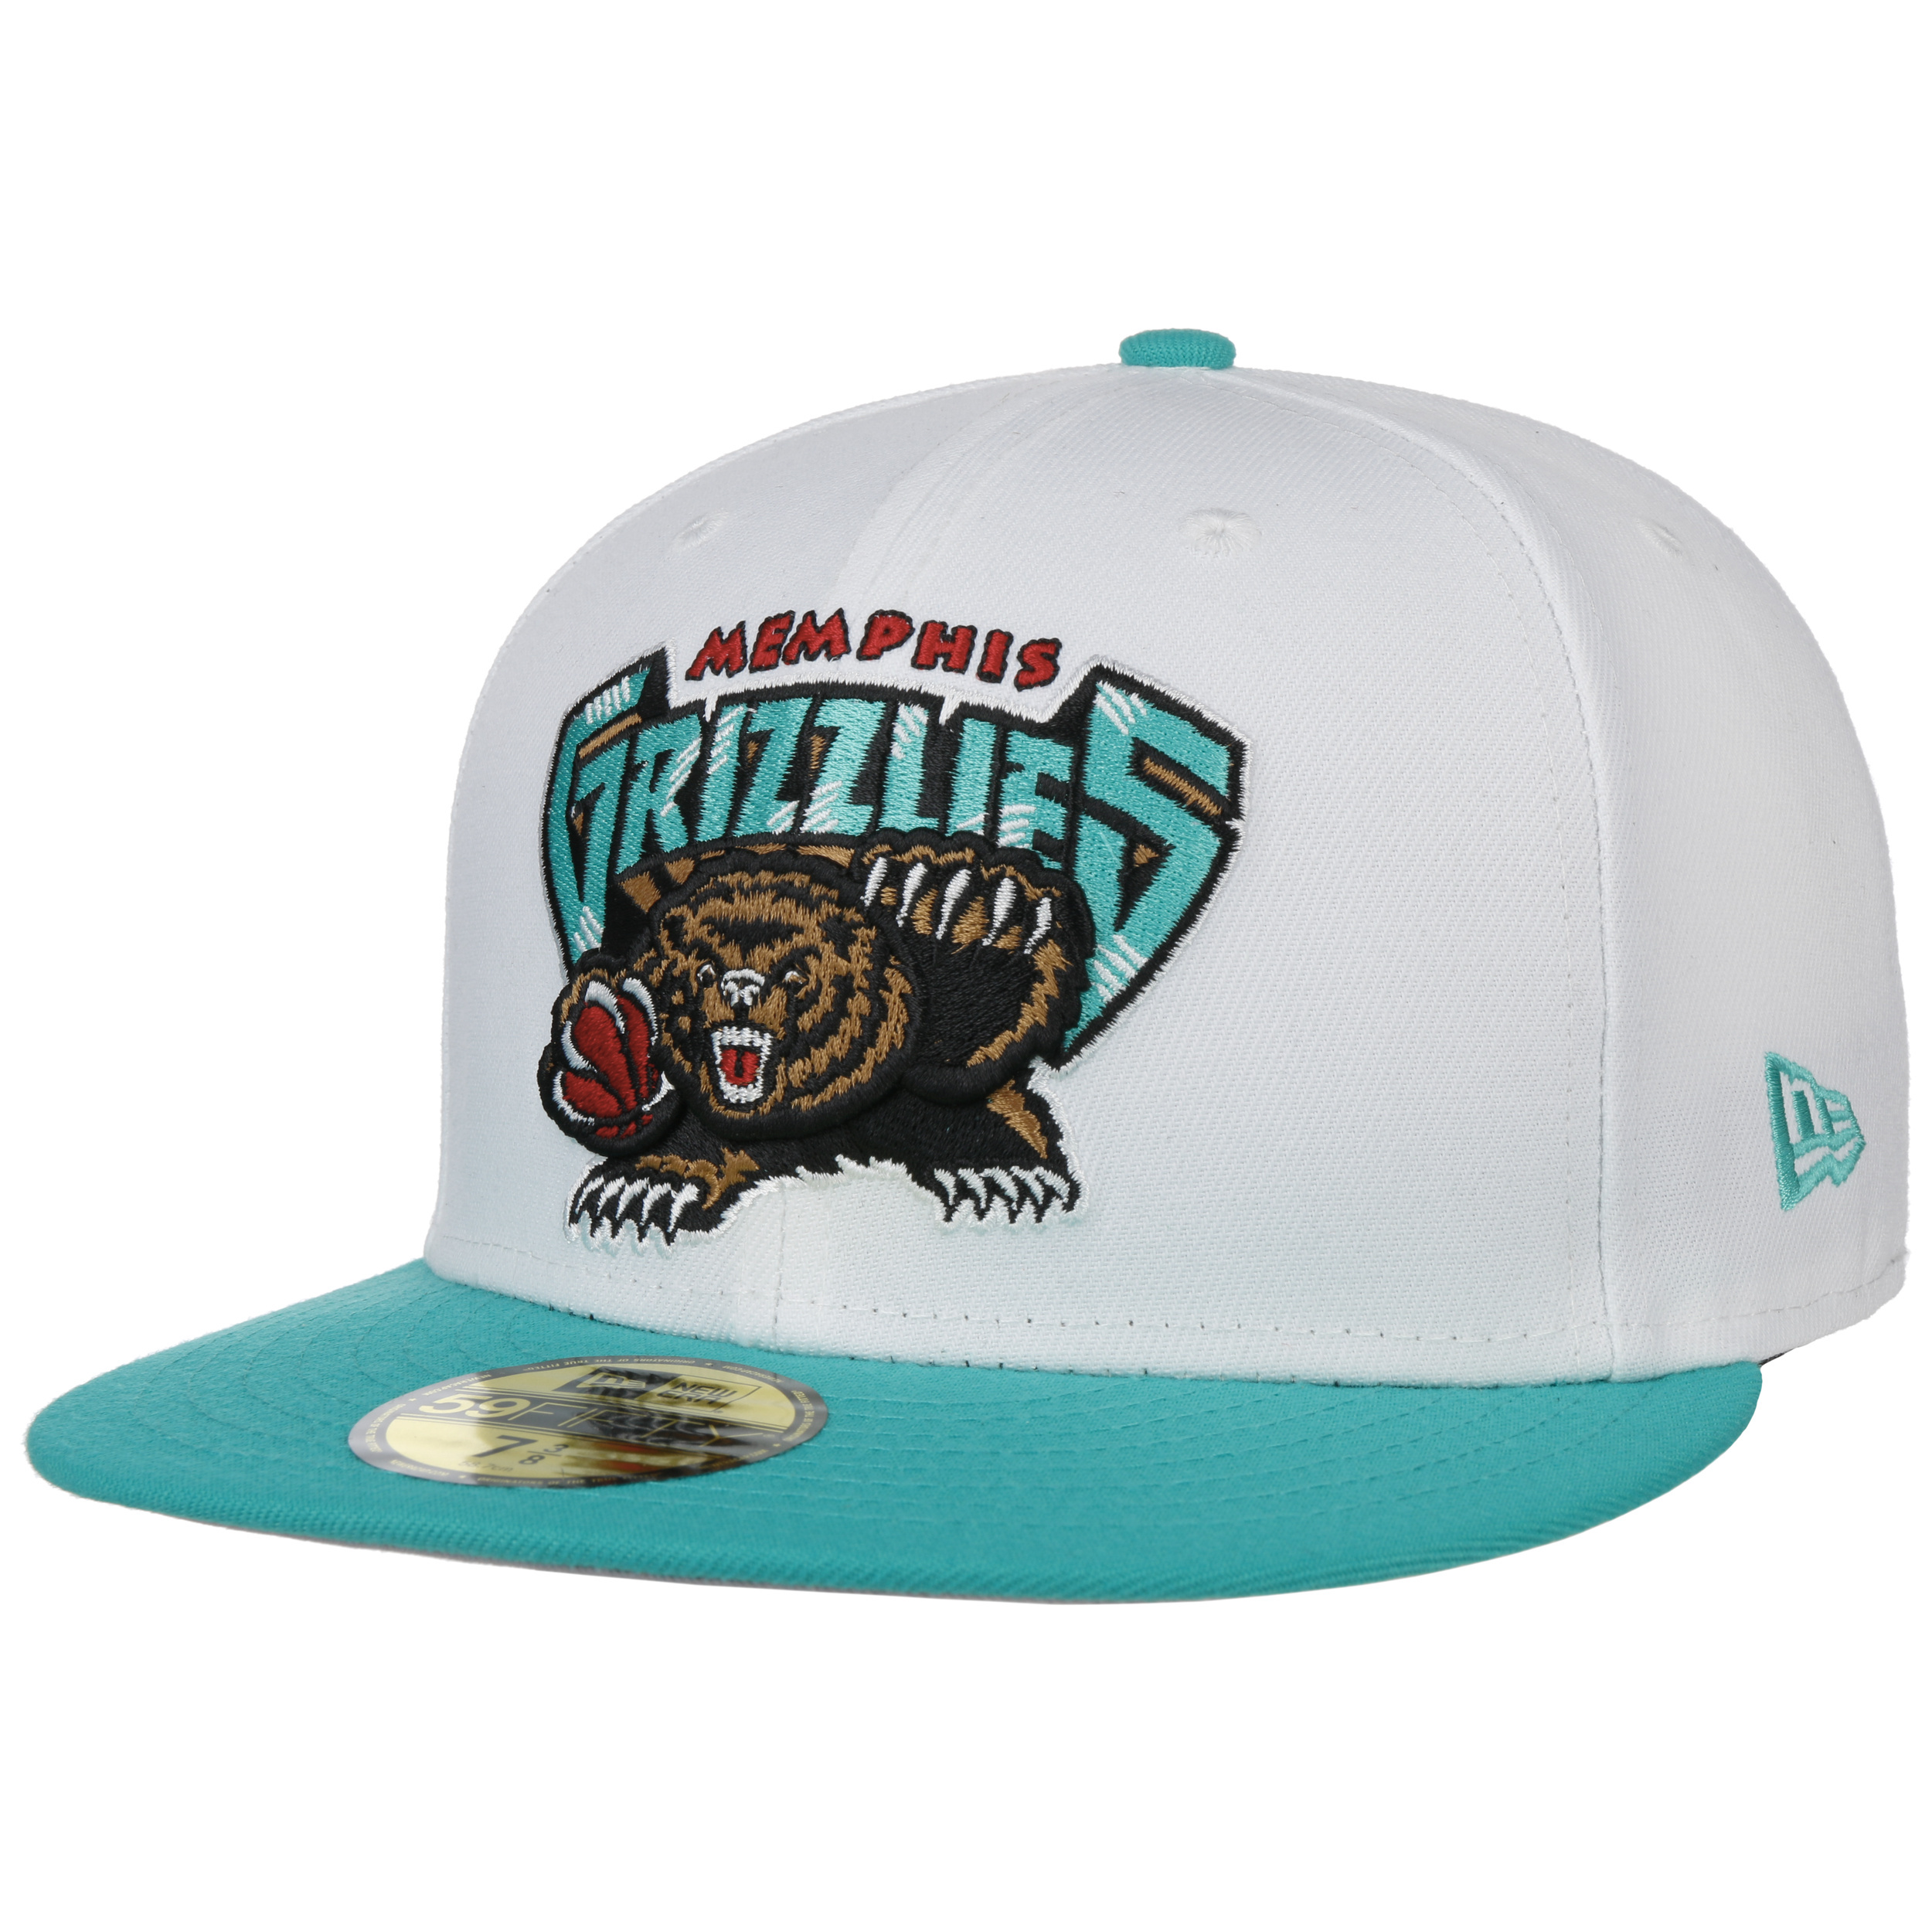 New Era Men's Memphis Grizzlies 9Fifty Adjustable Snapback Hat